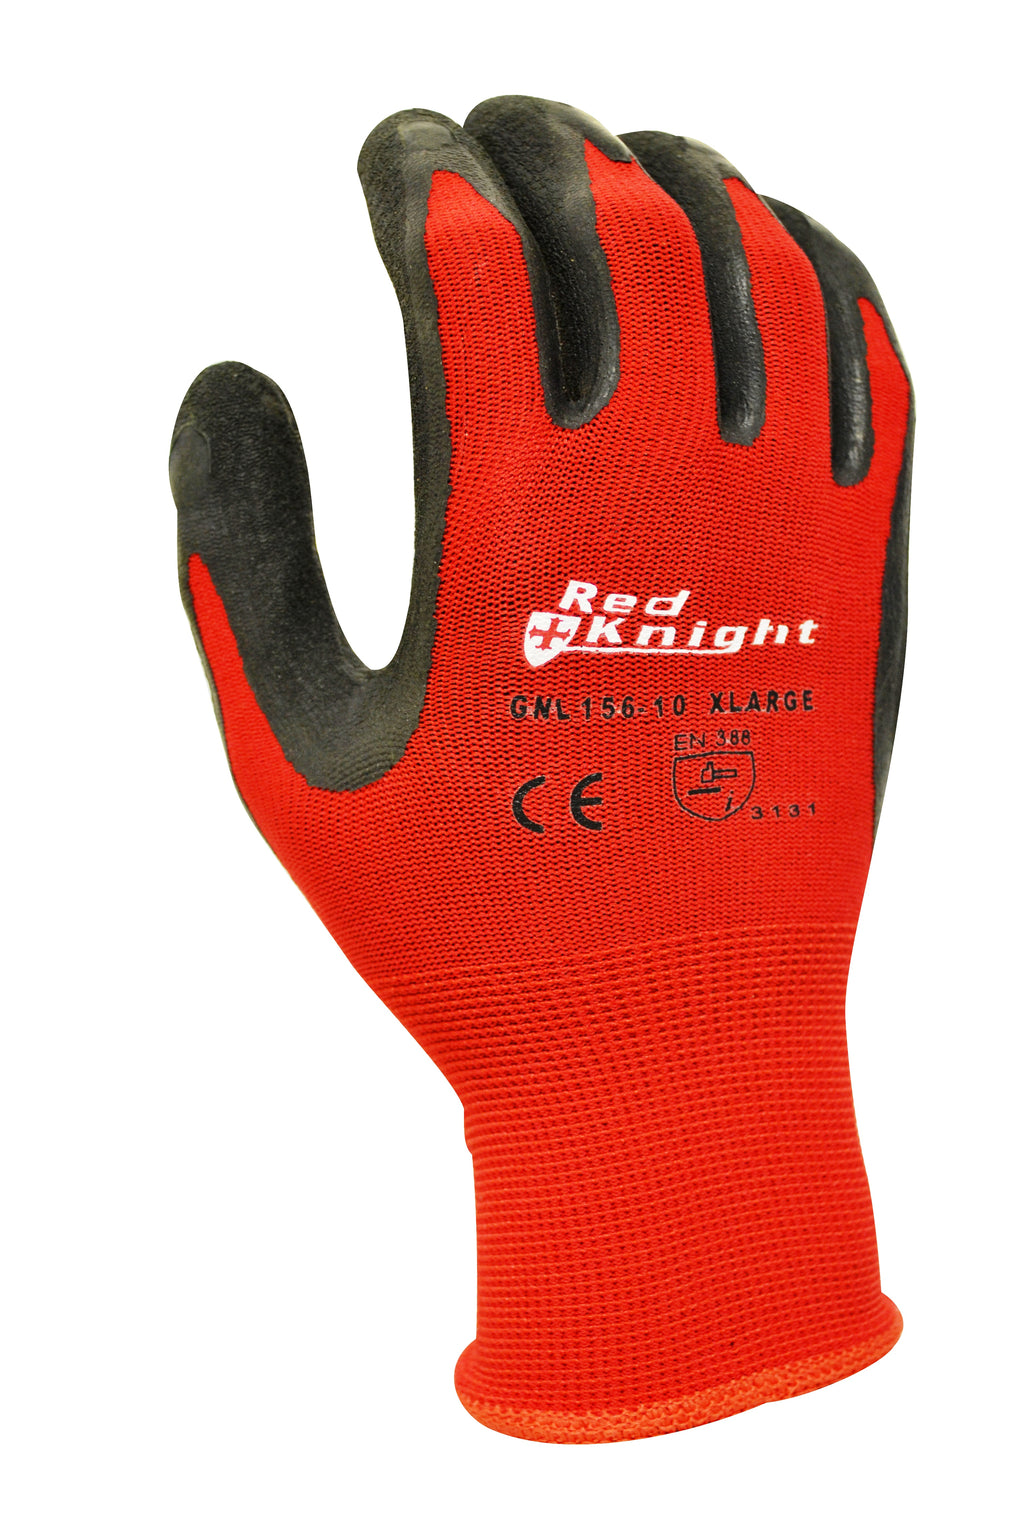 Red Knight Gripmaster Glove